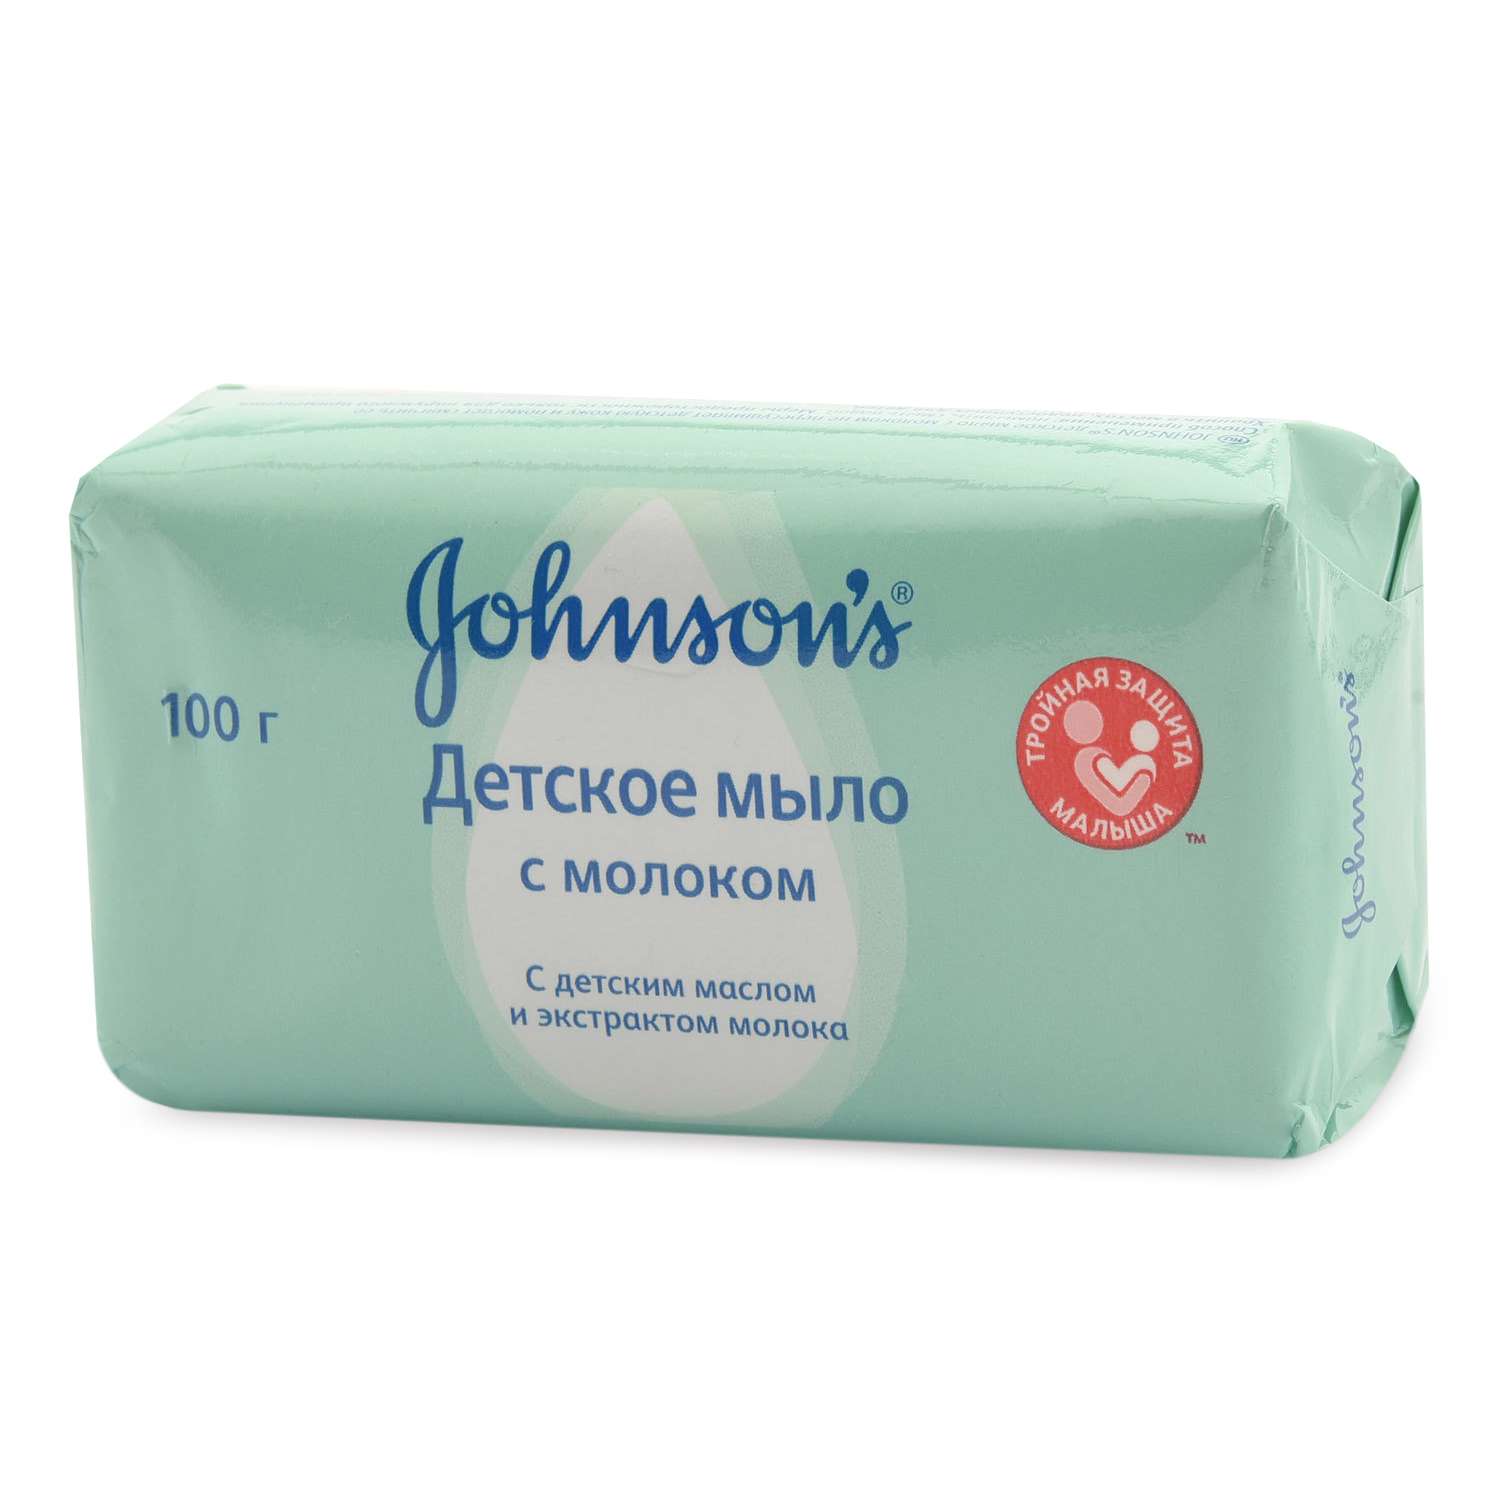 Мыло Johnson's с экстрактом натурального молочка 100г - фото 2